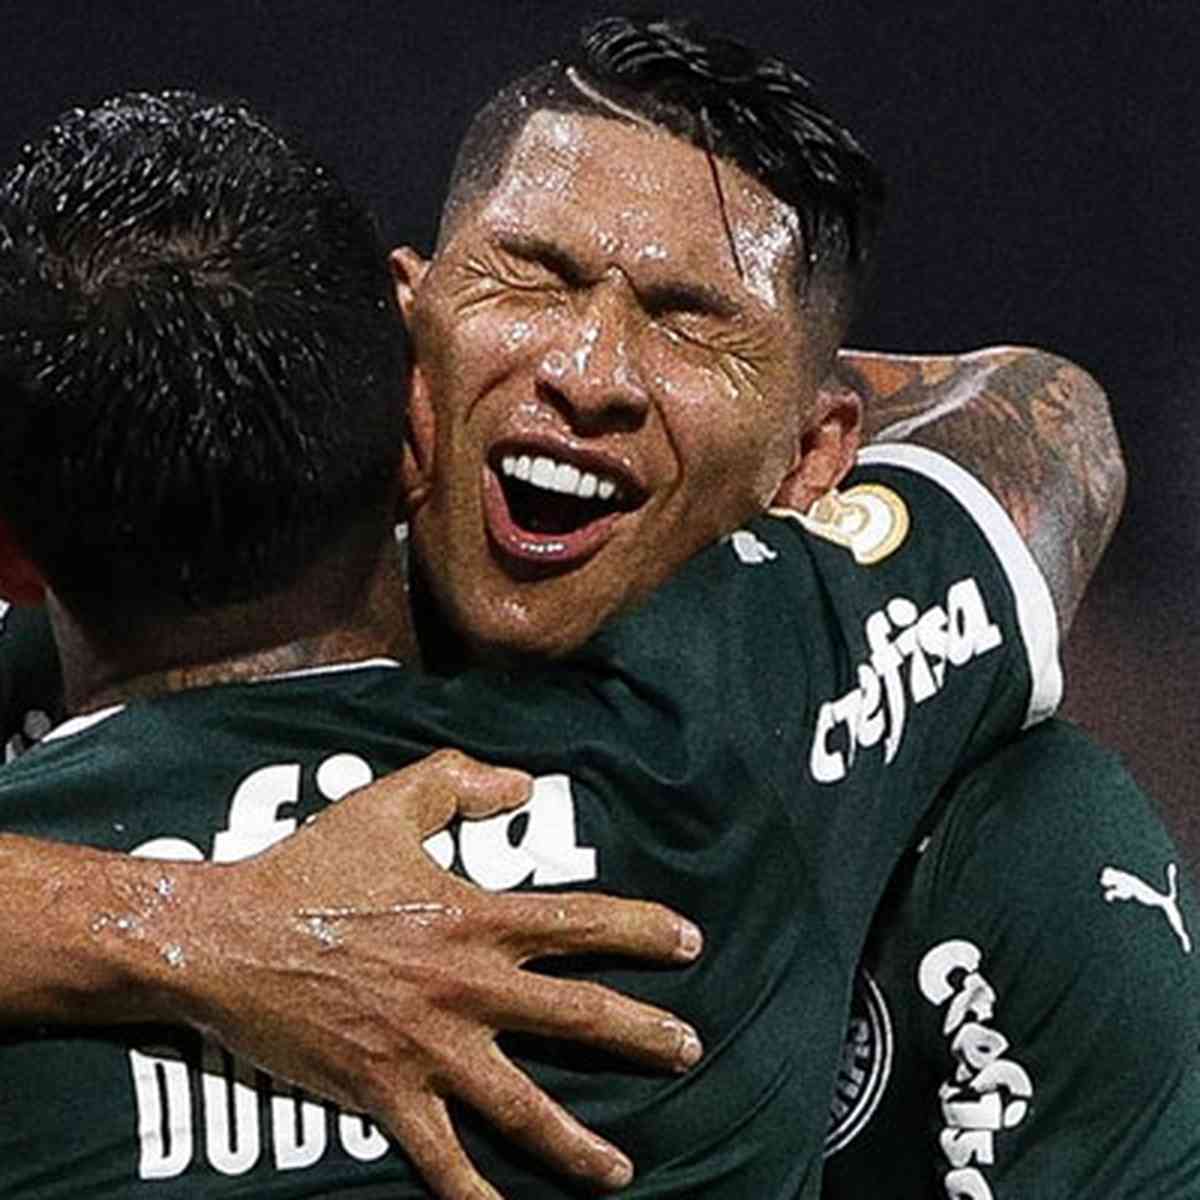 Palmeiras x Fortaleza - Superesportes